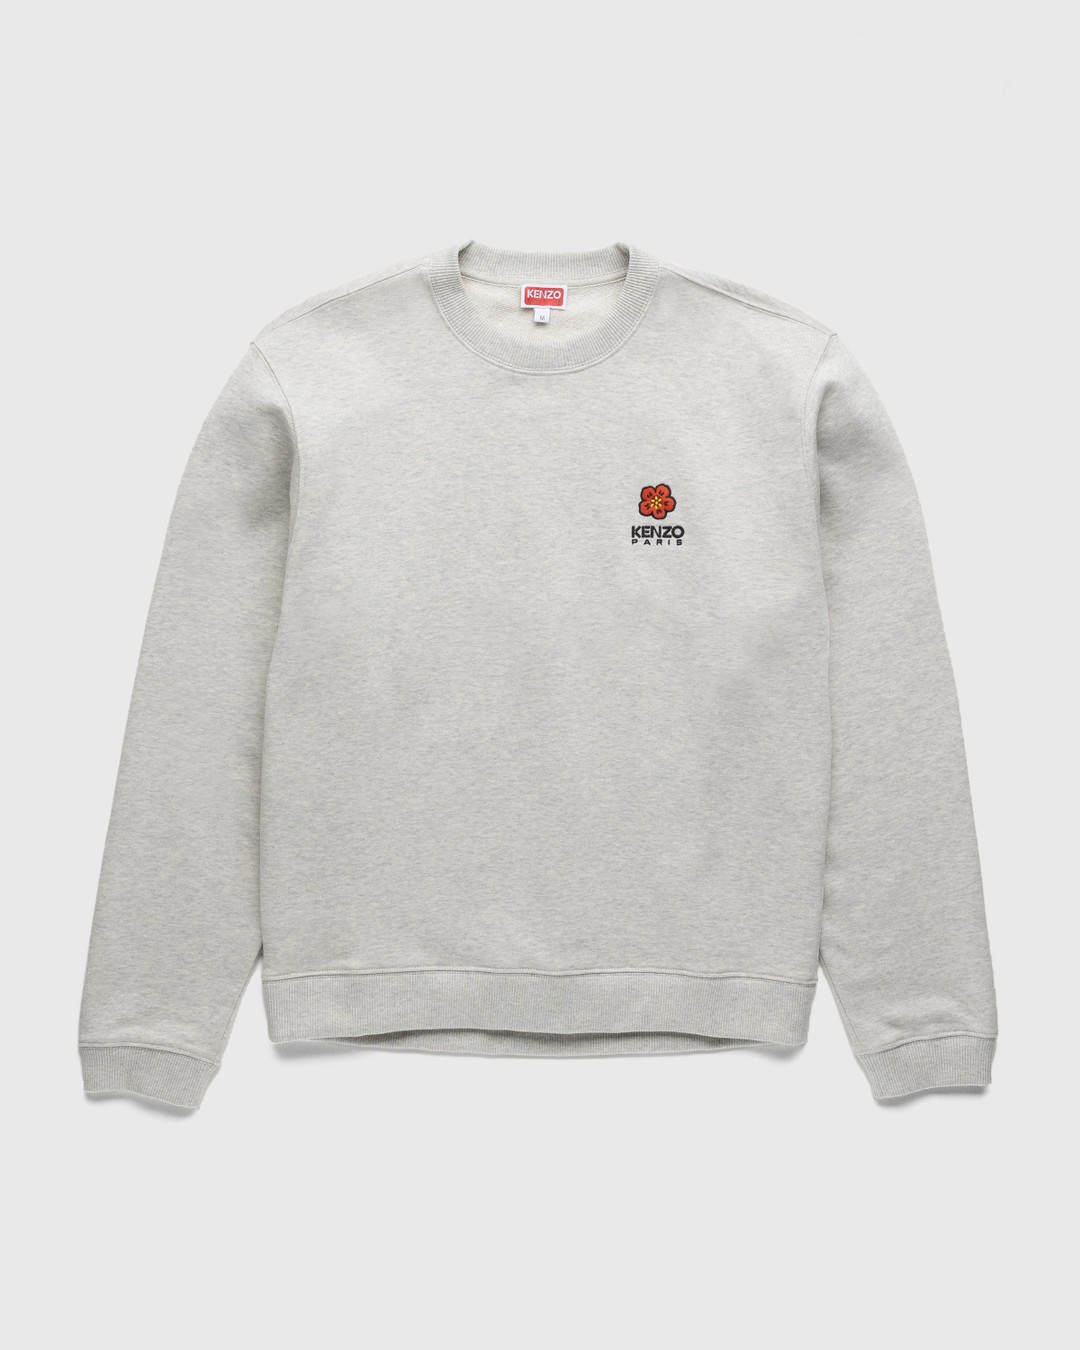 Kenzo – Boke Flower Crest Sweatshirt Pale Grey - Sweats - Grey - Image 1